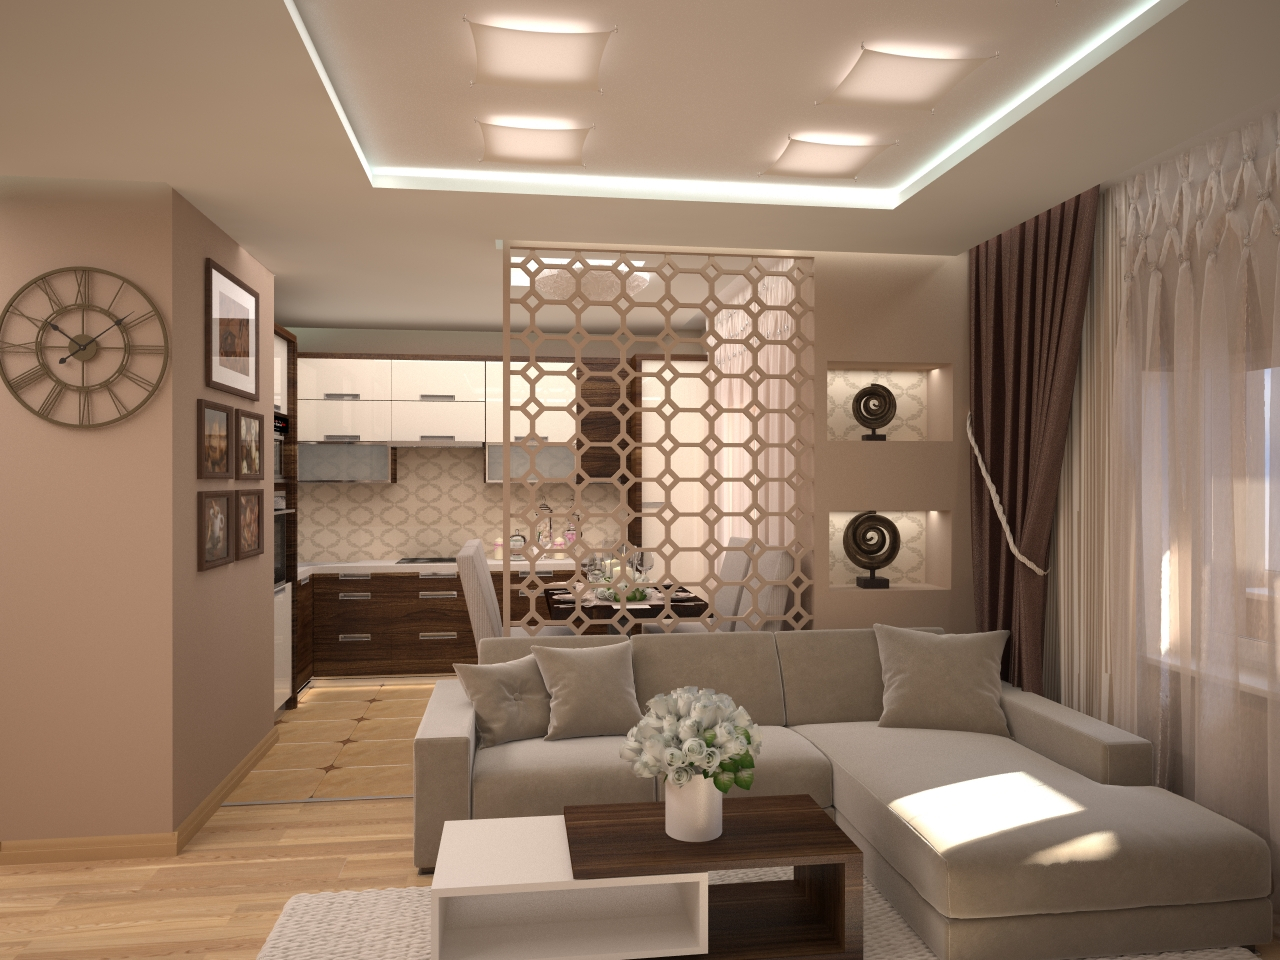 Дизайн интерьера гостиной площадью 20 м2: цвета и освещение, мебель, дизайн кухни-гостиной, спальни-гостиной, стиль оформления - хай-тек, восточный, минимализм | ileds.ru